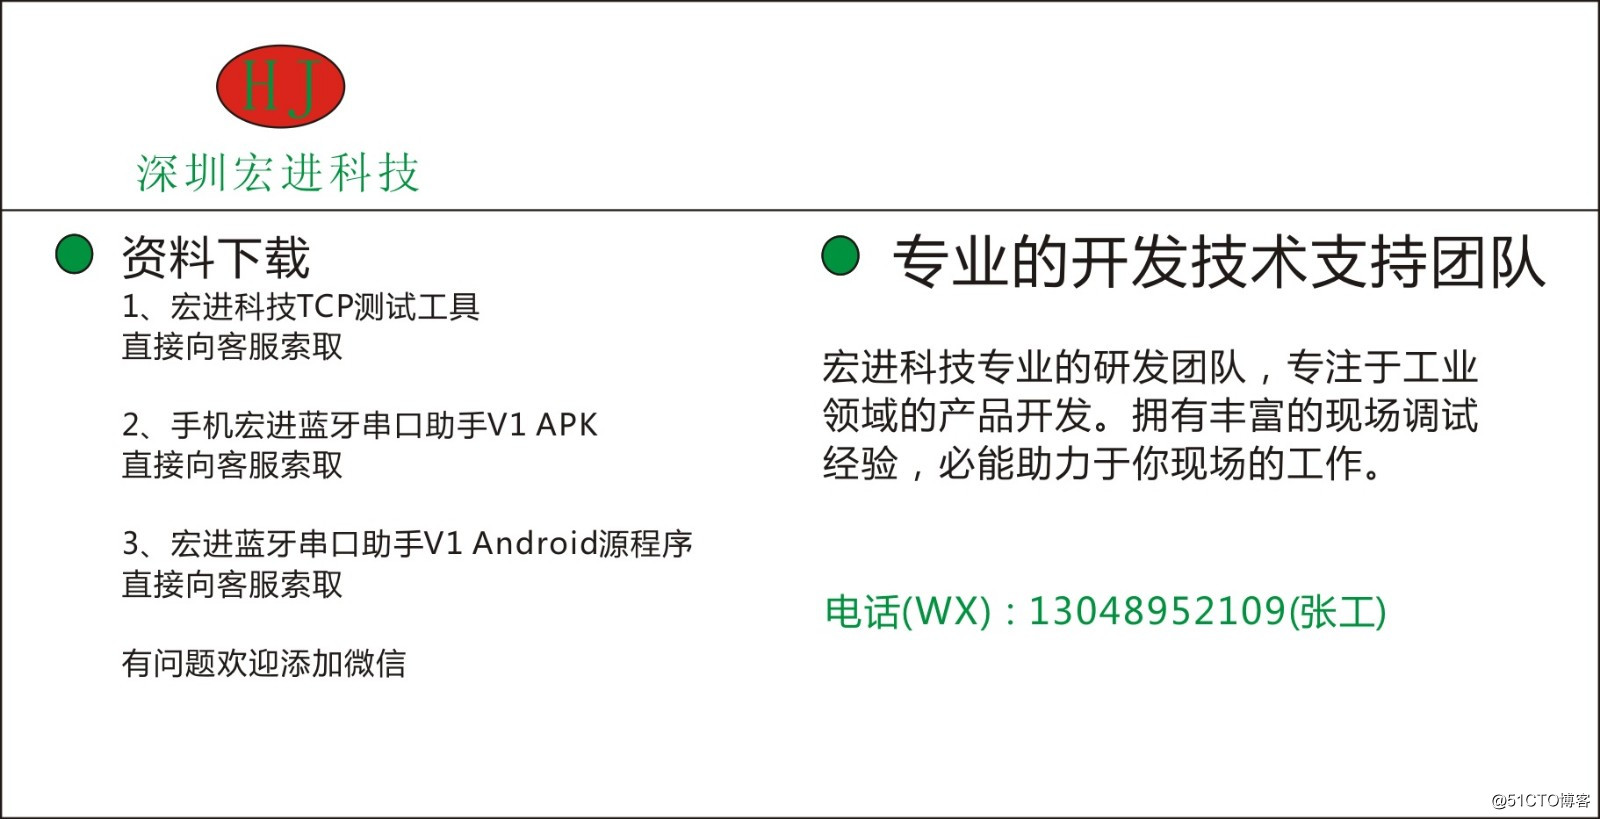 手机蓝牙转串口硬件和ANDROID的APK程序开发源代码